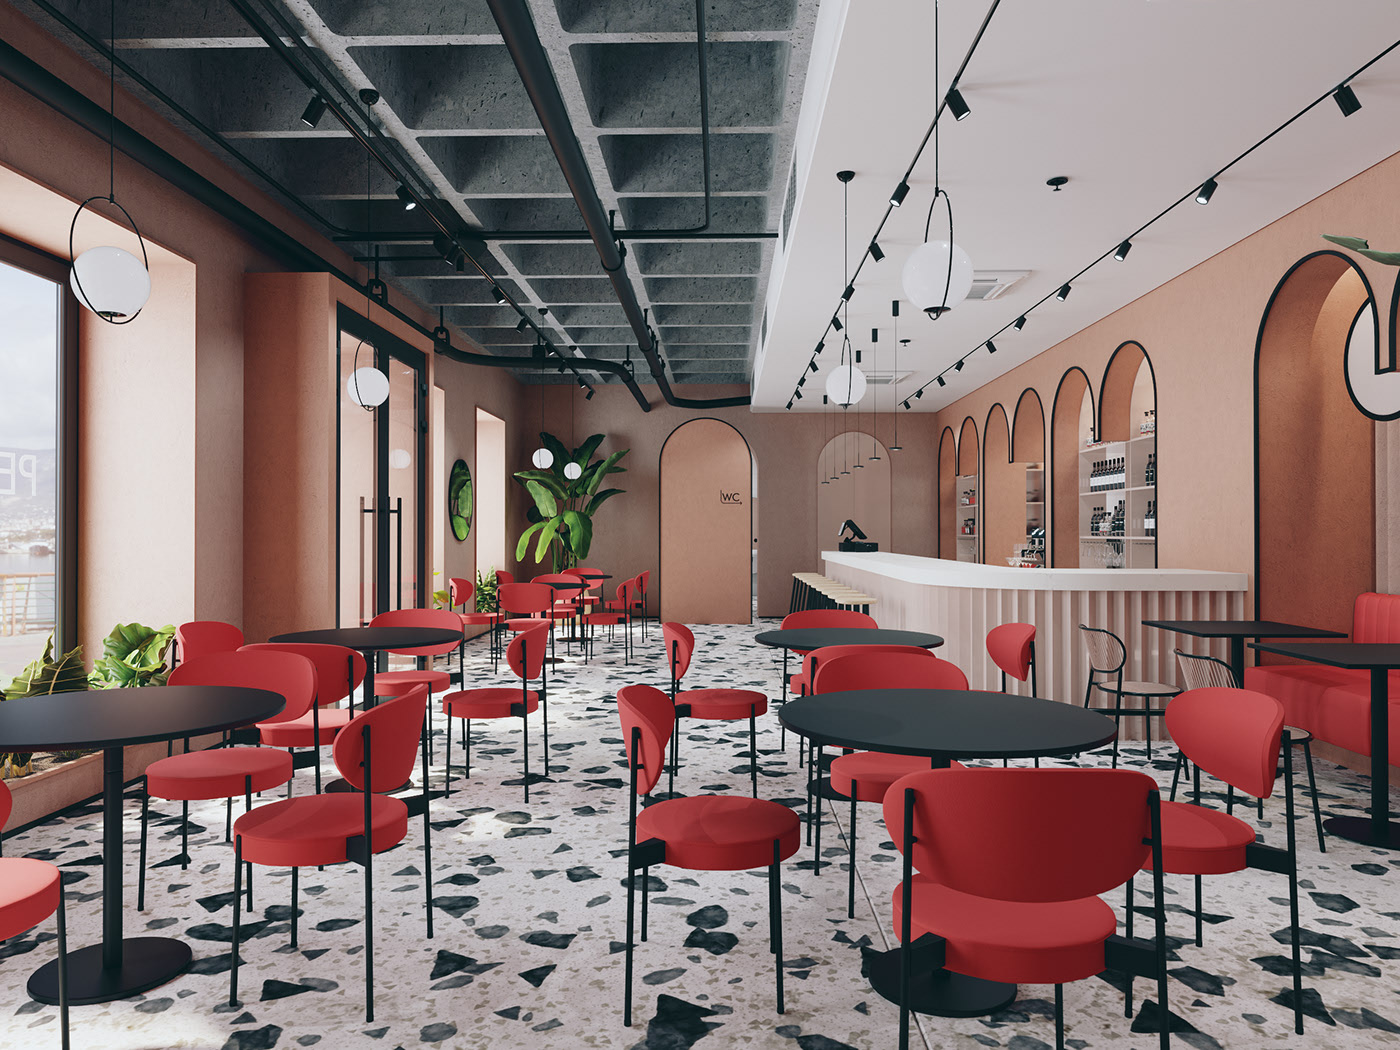 Thiết kế trang trí nội thất quán cafe sang trọng lịch sự